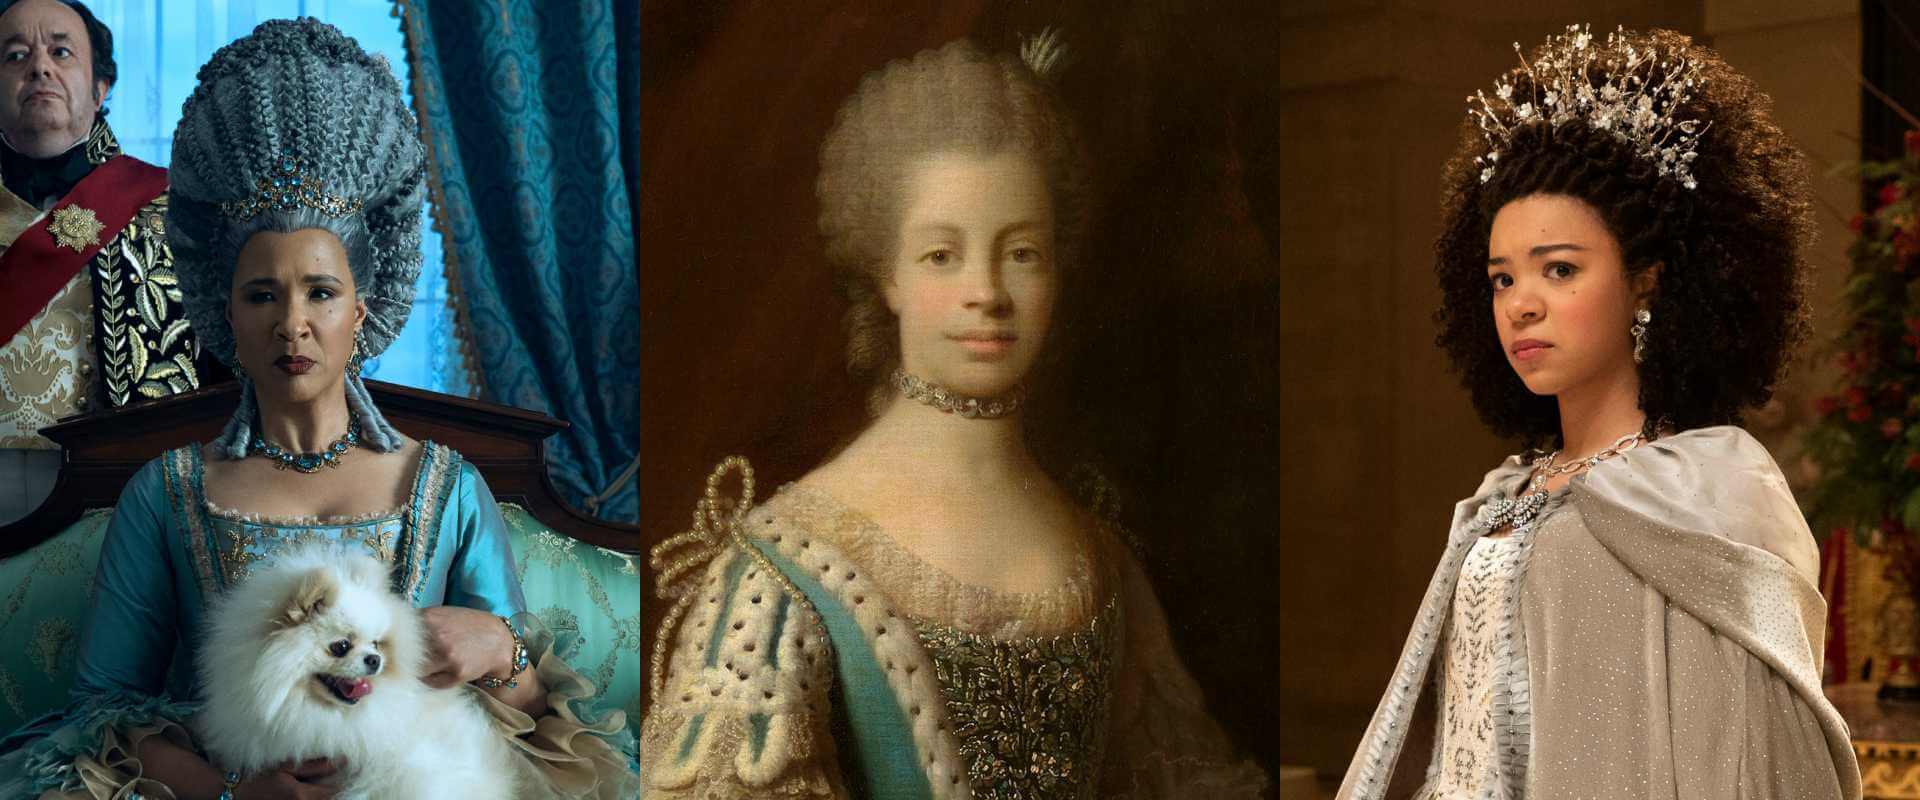 Conheça a verdadeira história por trás do "Rei Louco" George III e da Rainha Charlotte no spin-off de Bridgerton